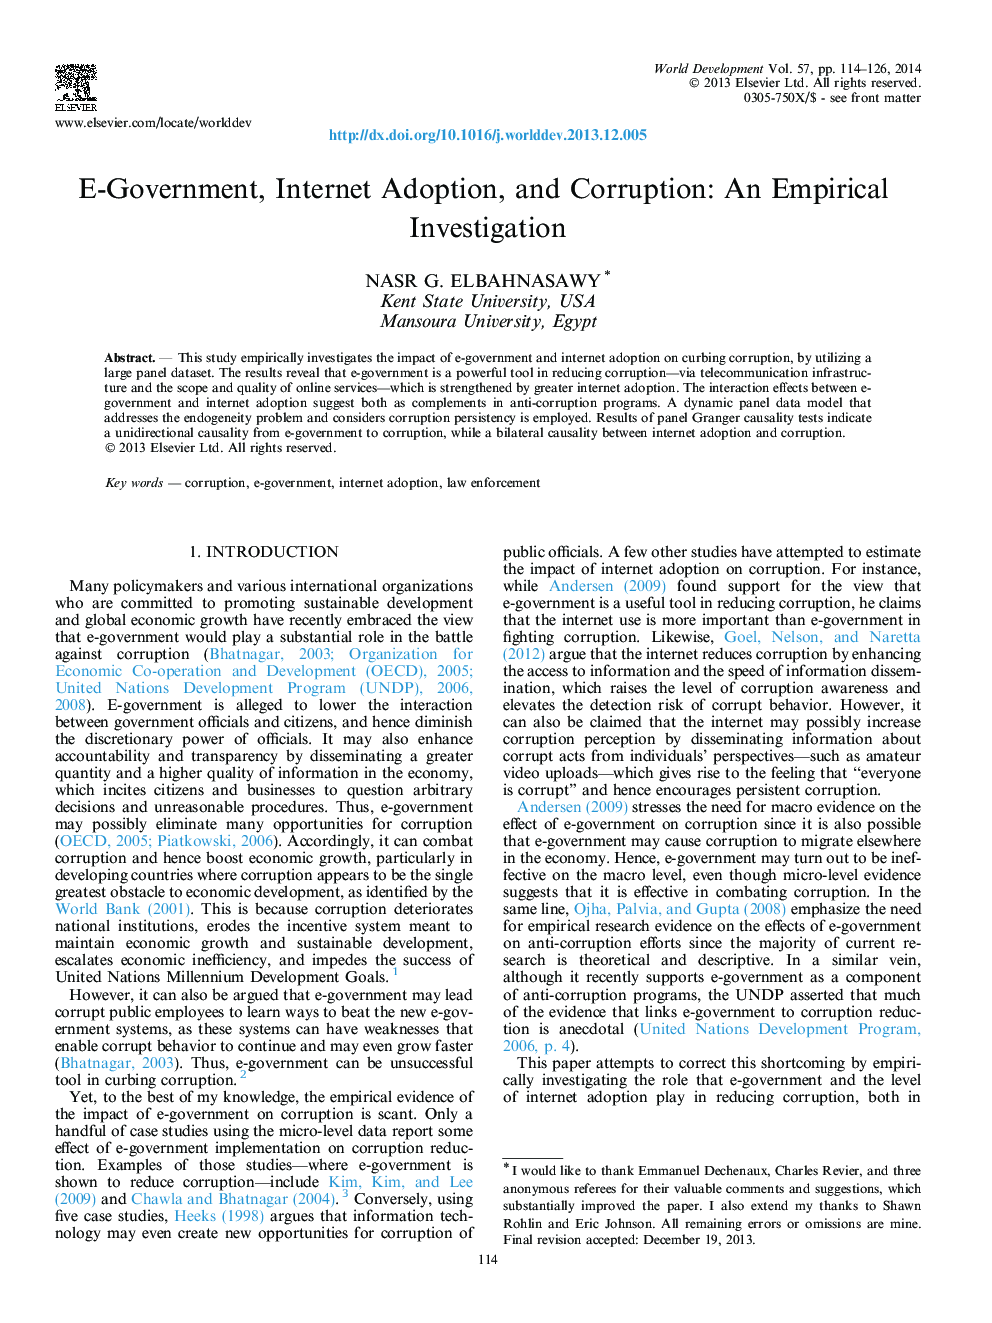 دولت الکترونیکی، پذیرش اینترنتی و فساد: تحقیقات تجربی 